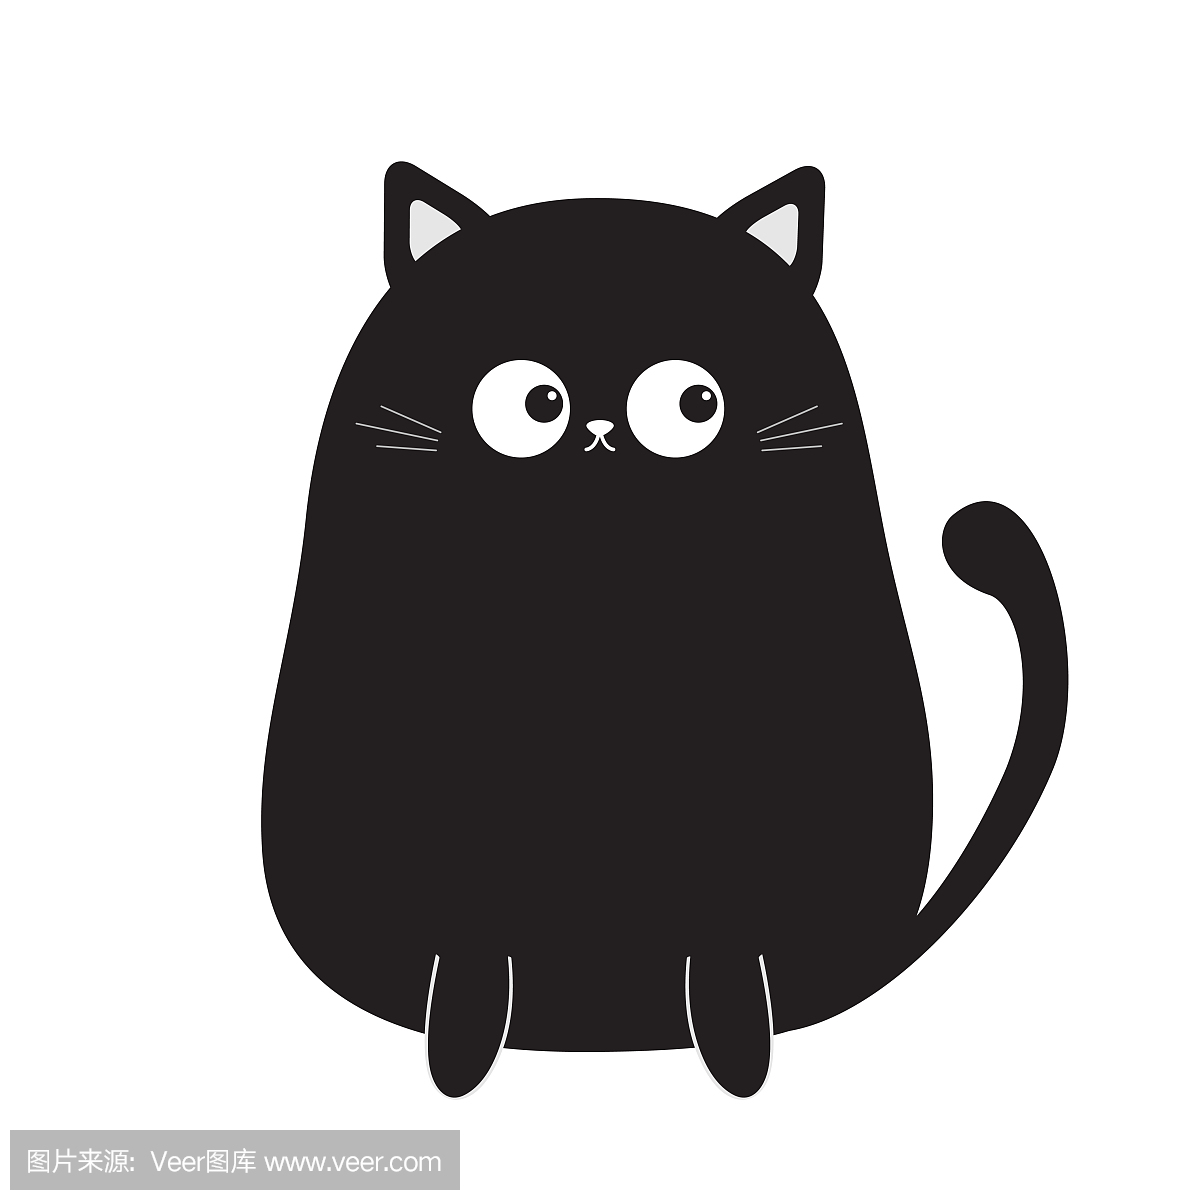 坐在尾巴上的黑色可爱坐猫小猫。卡通小猫角色